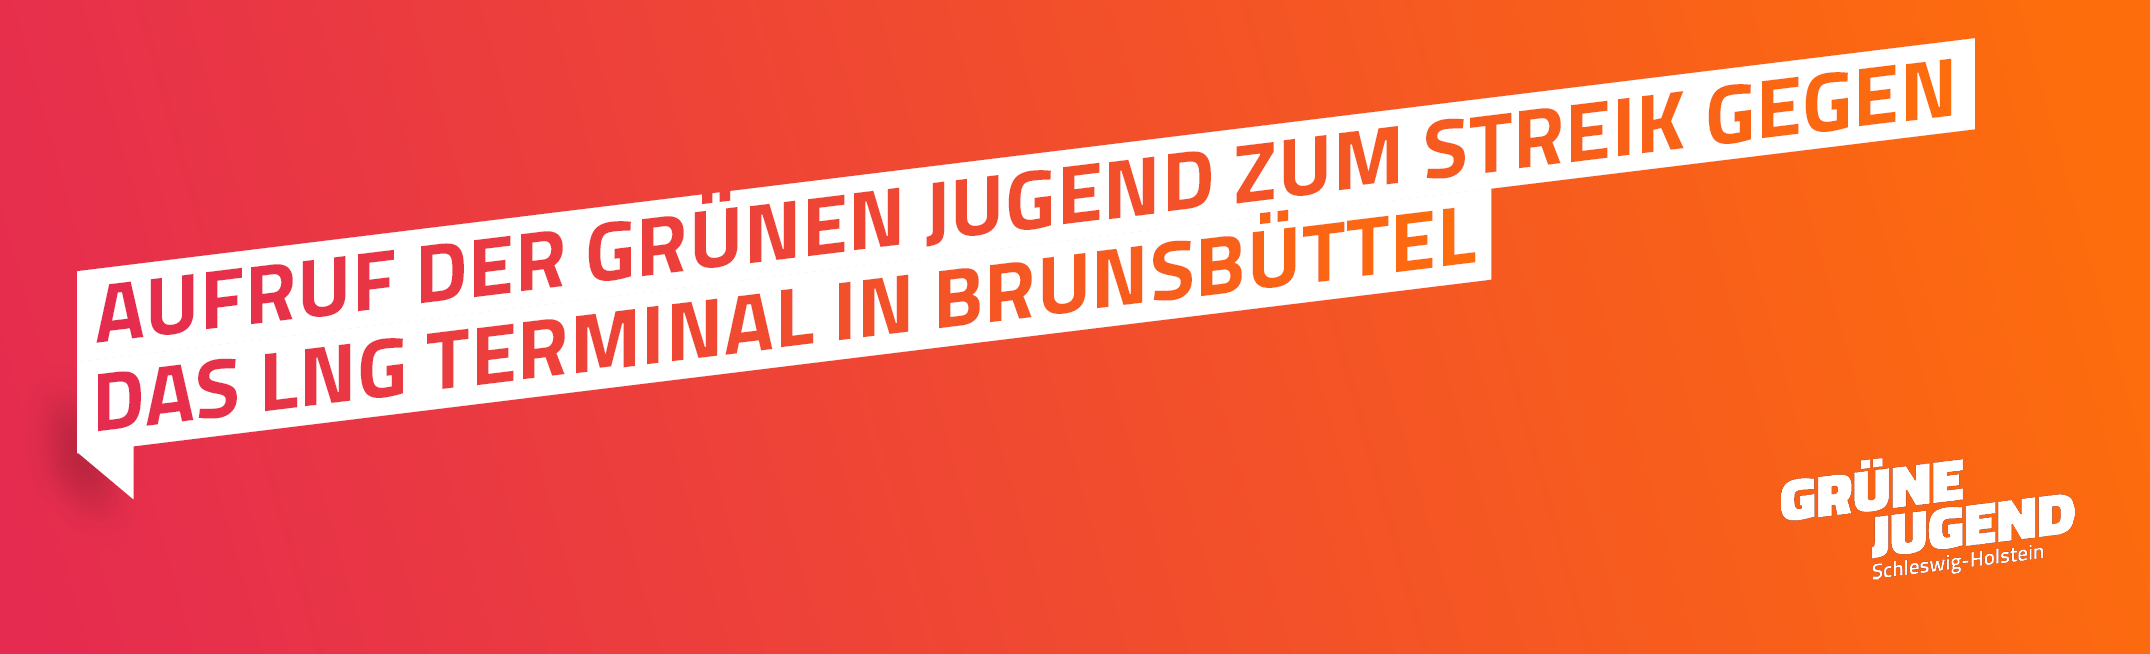 Aufruf zur Demonstration in Brunsbüttel